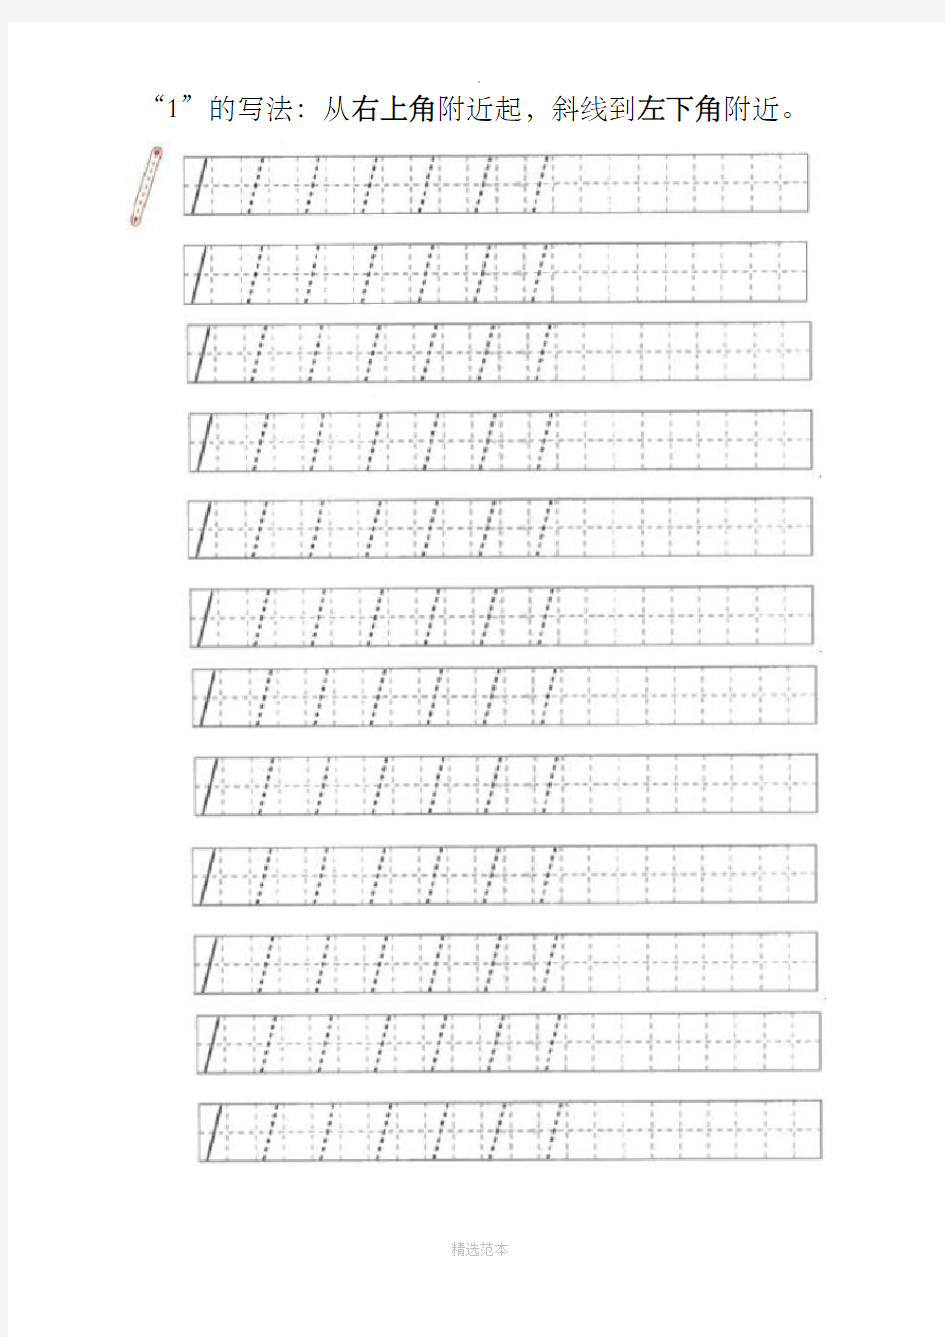 一年级 0～10数字书写规范及描红图 (1)